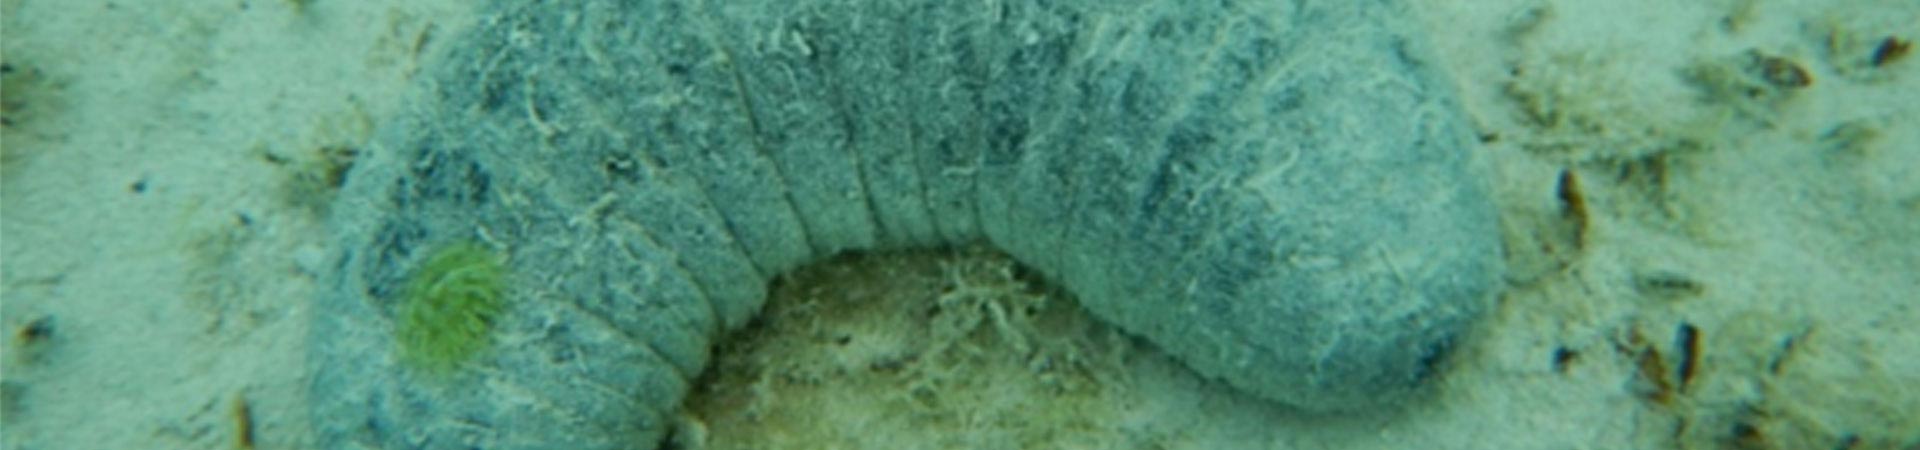 Photo of a farmed sea cucumber